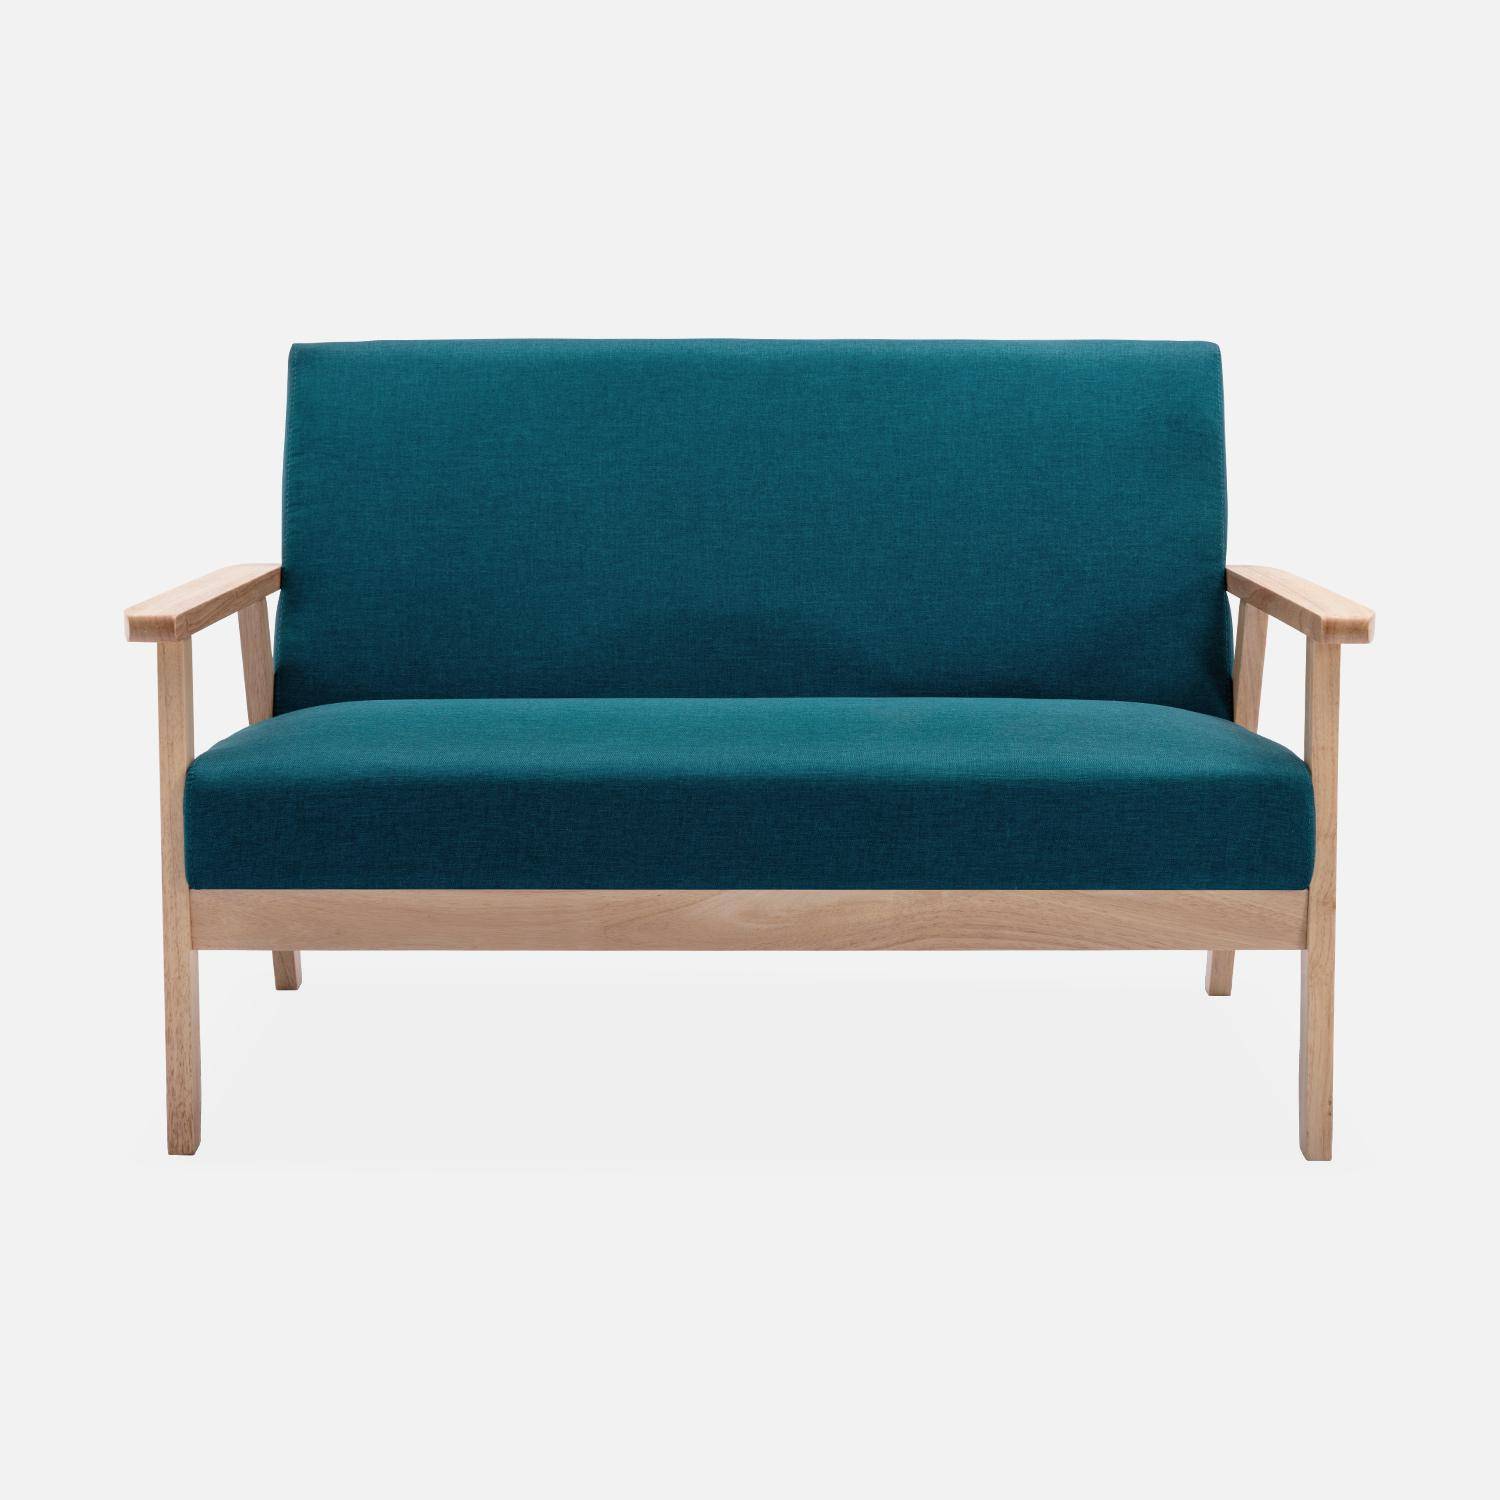 Banco y sillón escandinavos de madera y tela azul petróleo L 114 x A 69,5 x Alt 73cm Photo3